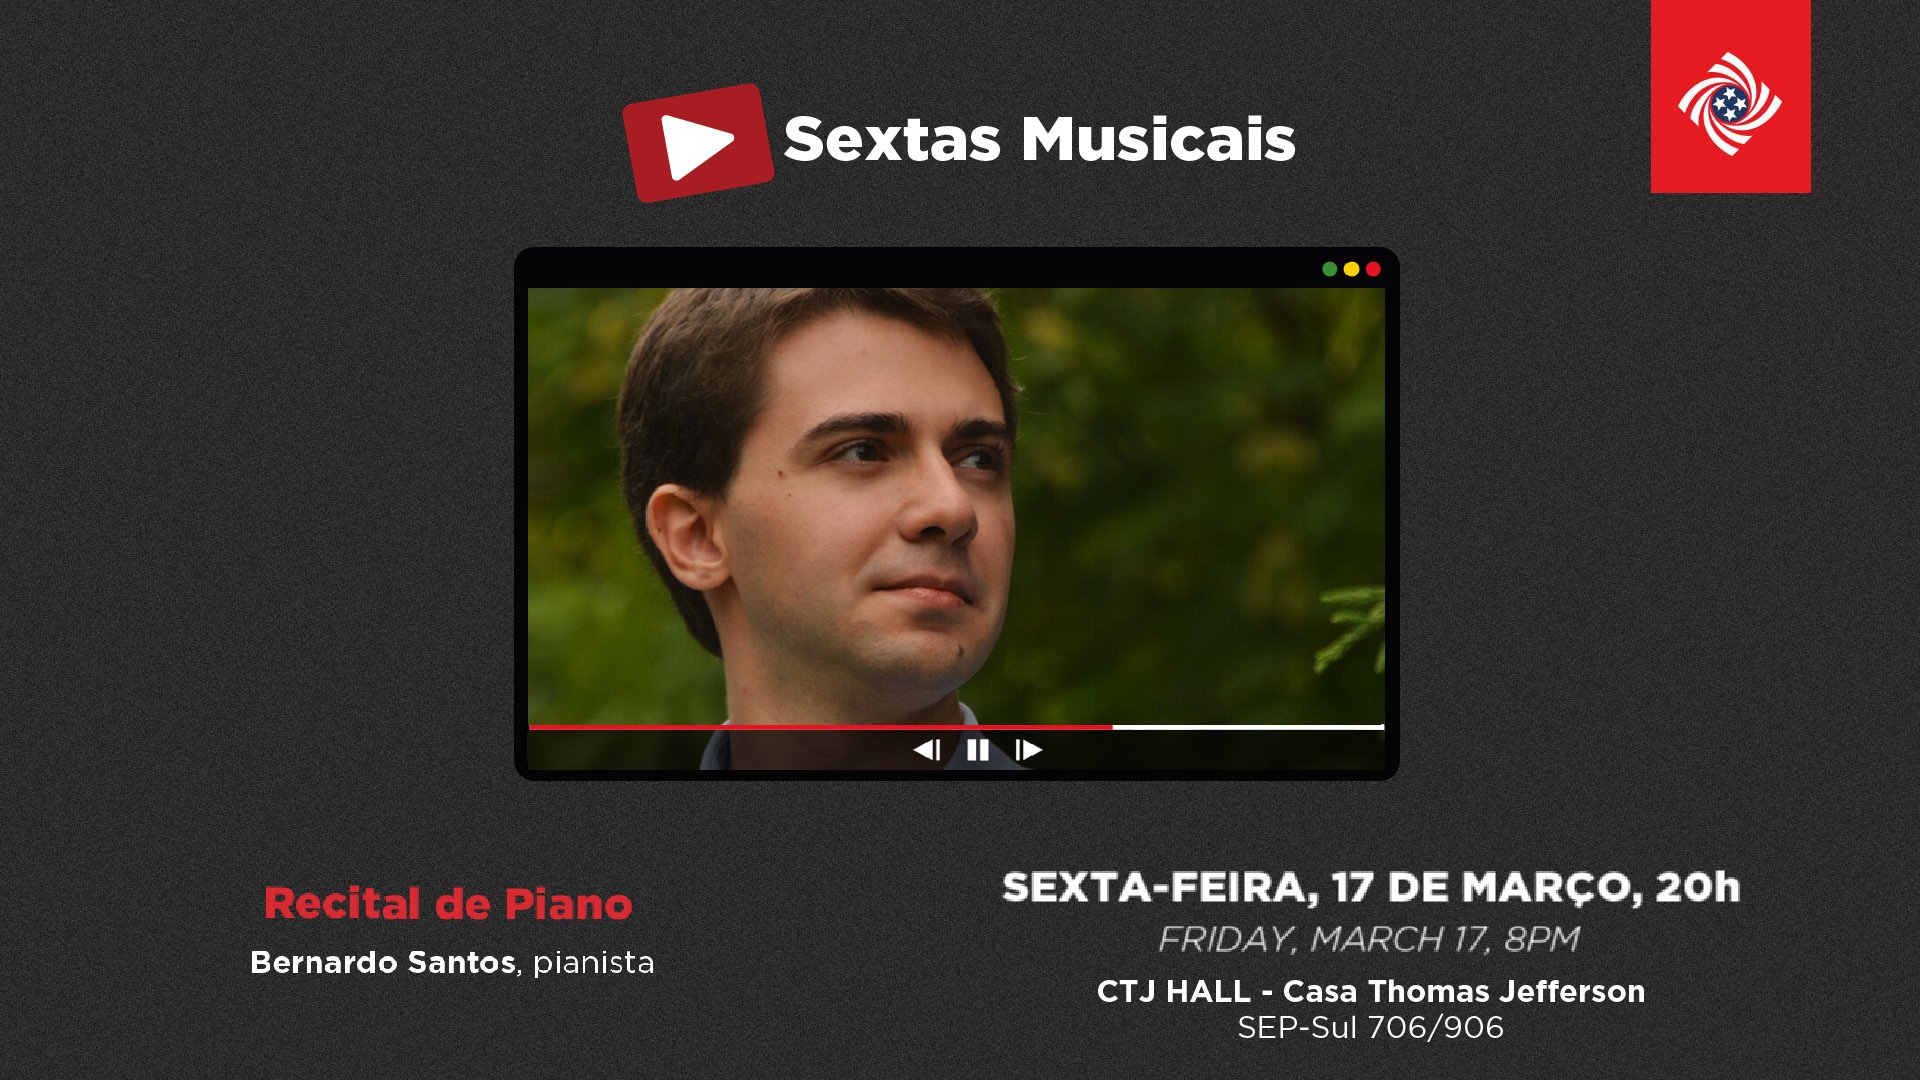 Pianista português Bernardo Santos faz recital solo no CTJ Hall